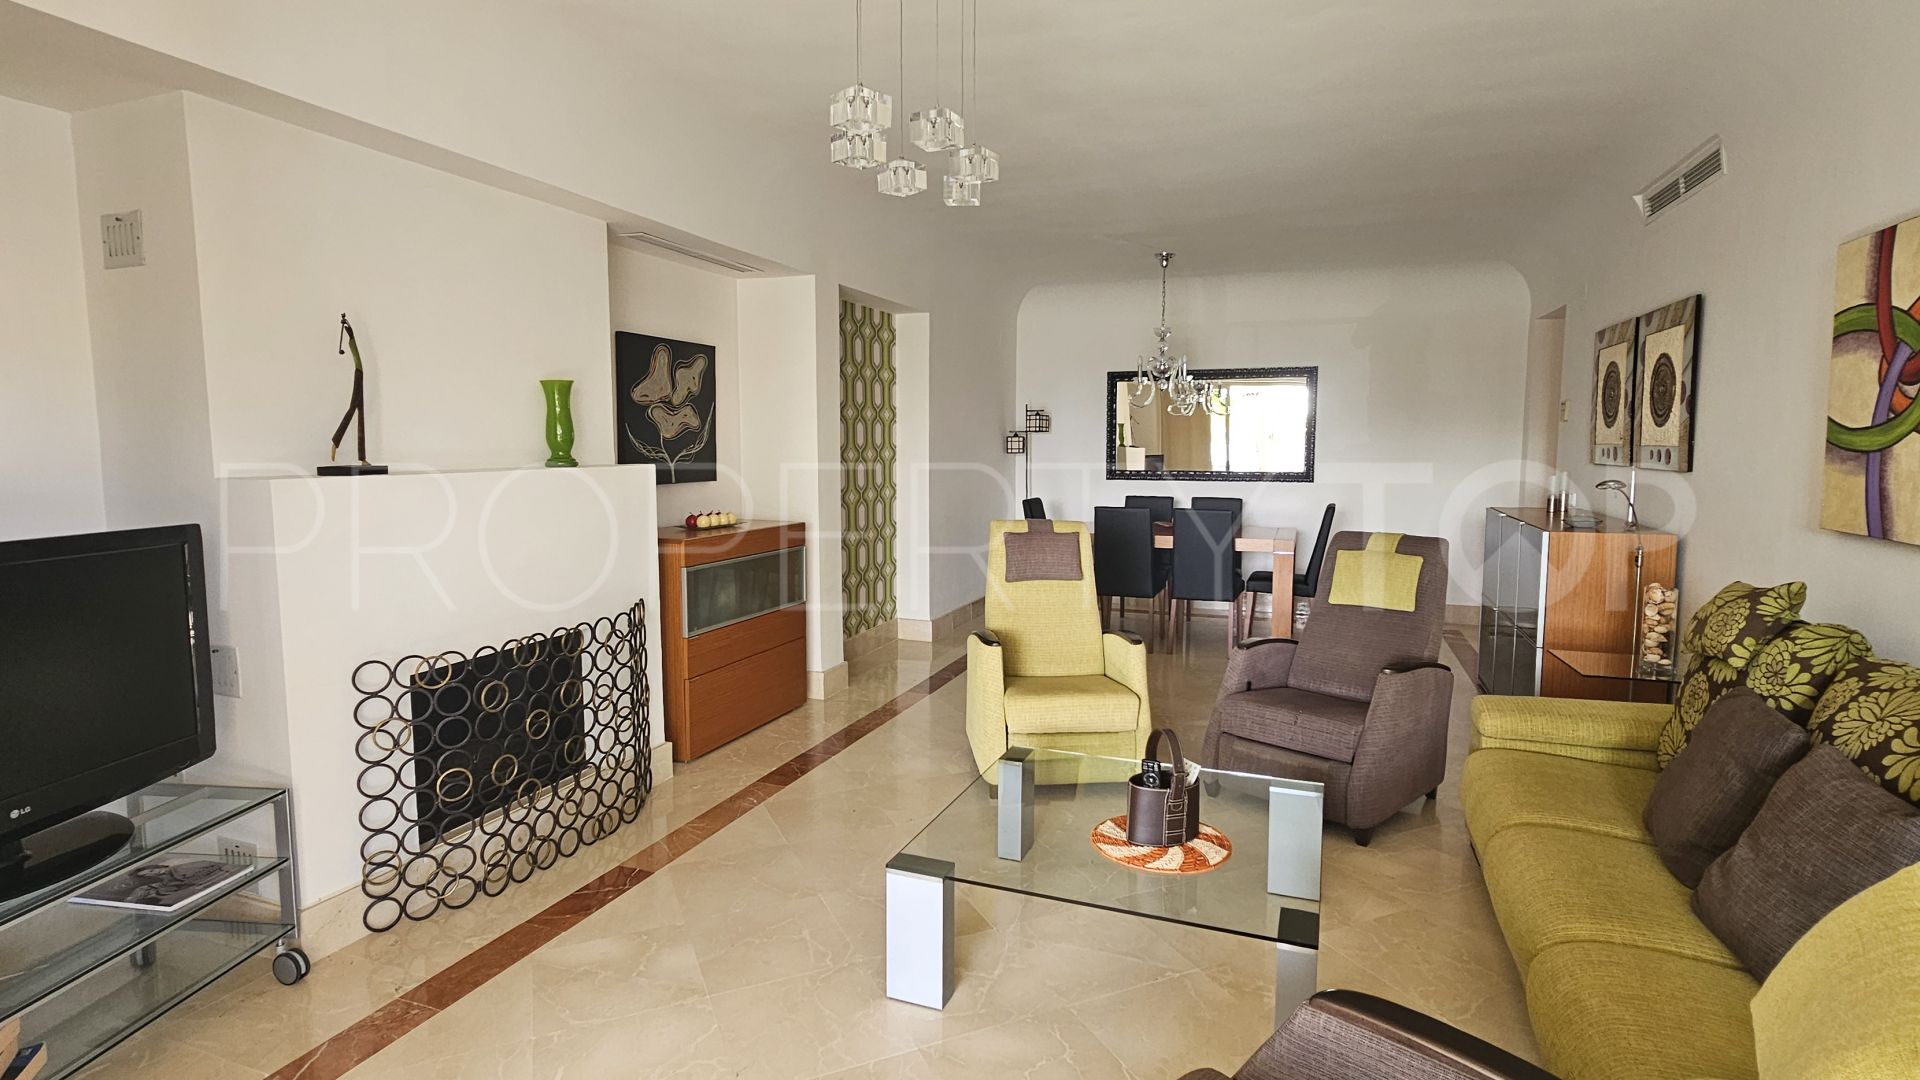 Ribera del Corvo, apartamento en venta con 3 dormitorios